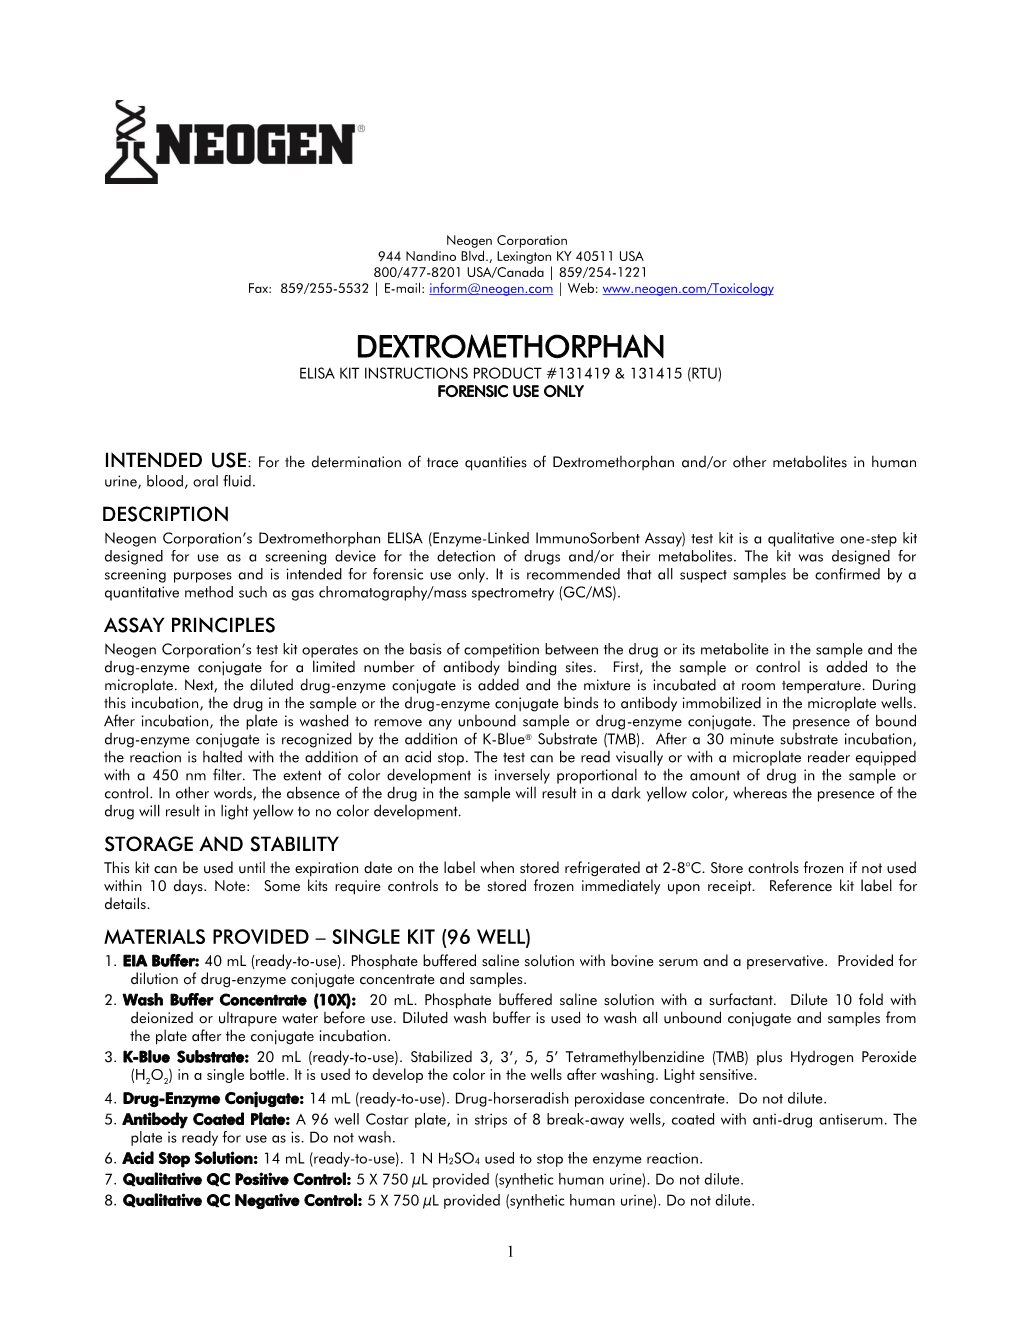 Dextromethorphan Elisa Kit Instructions Product #131419 & 131415 (Rtu) Forensic Use Only